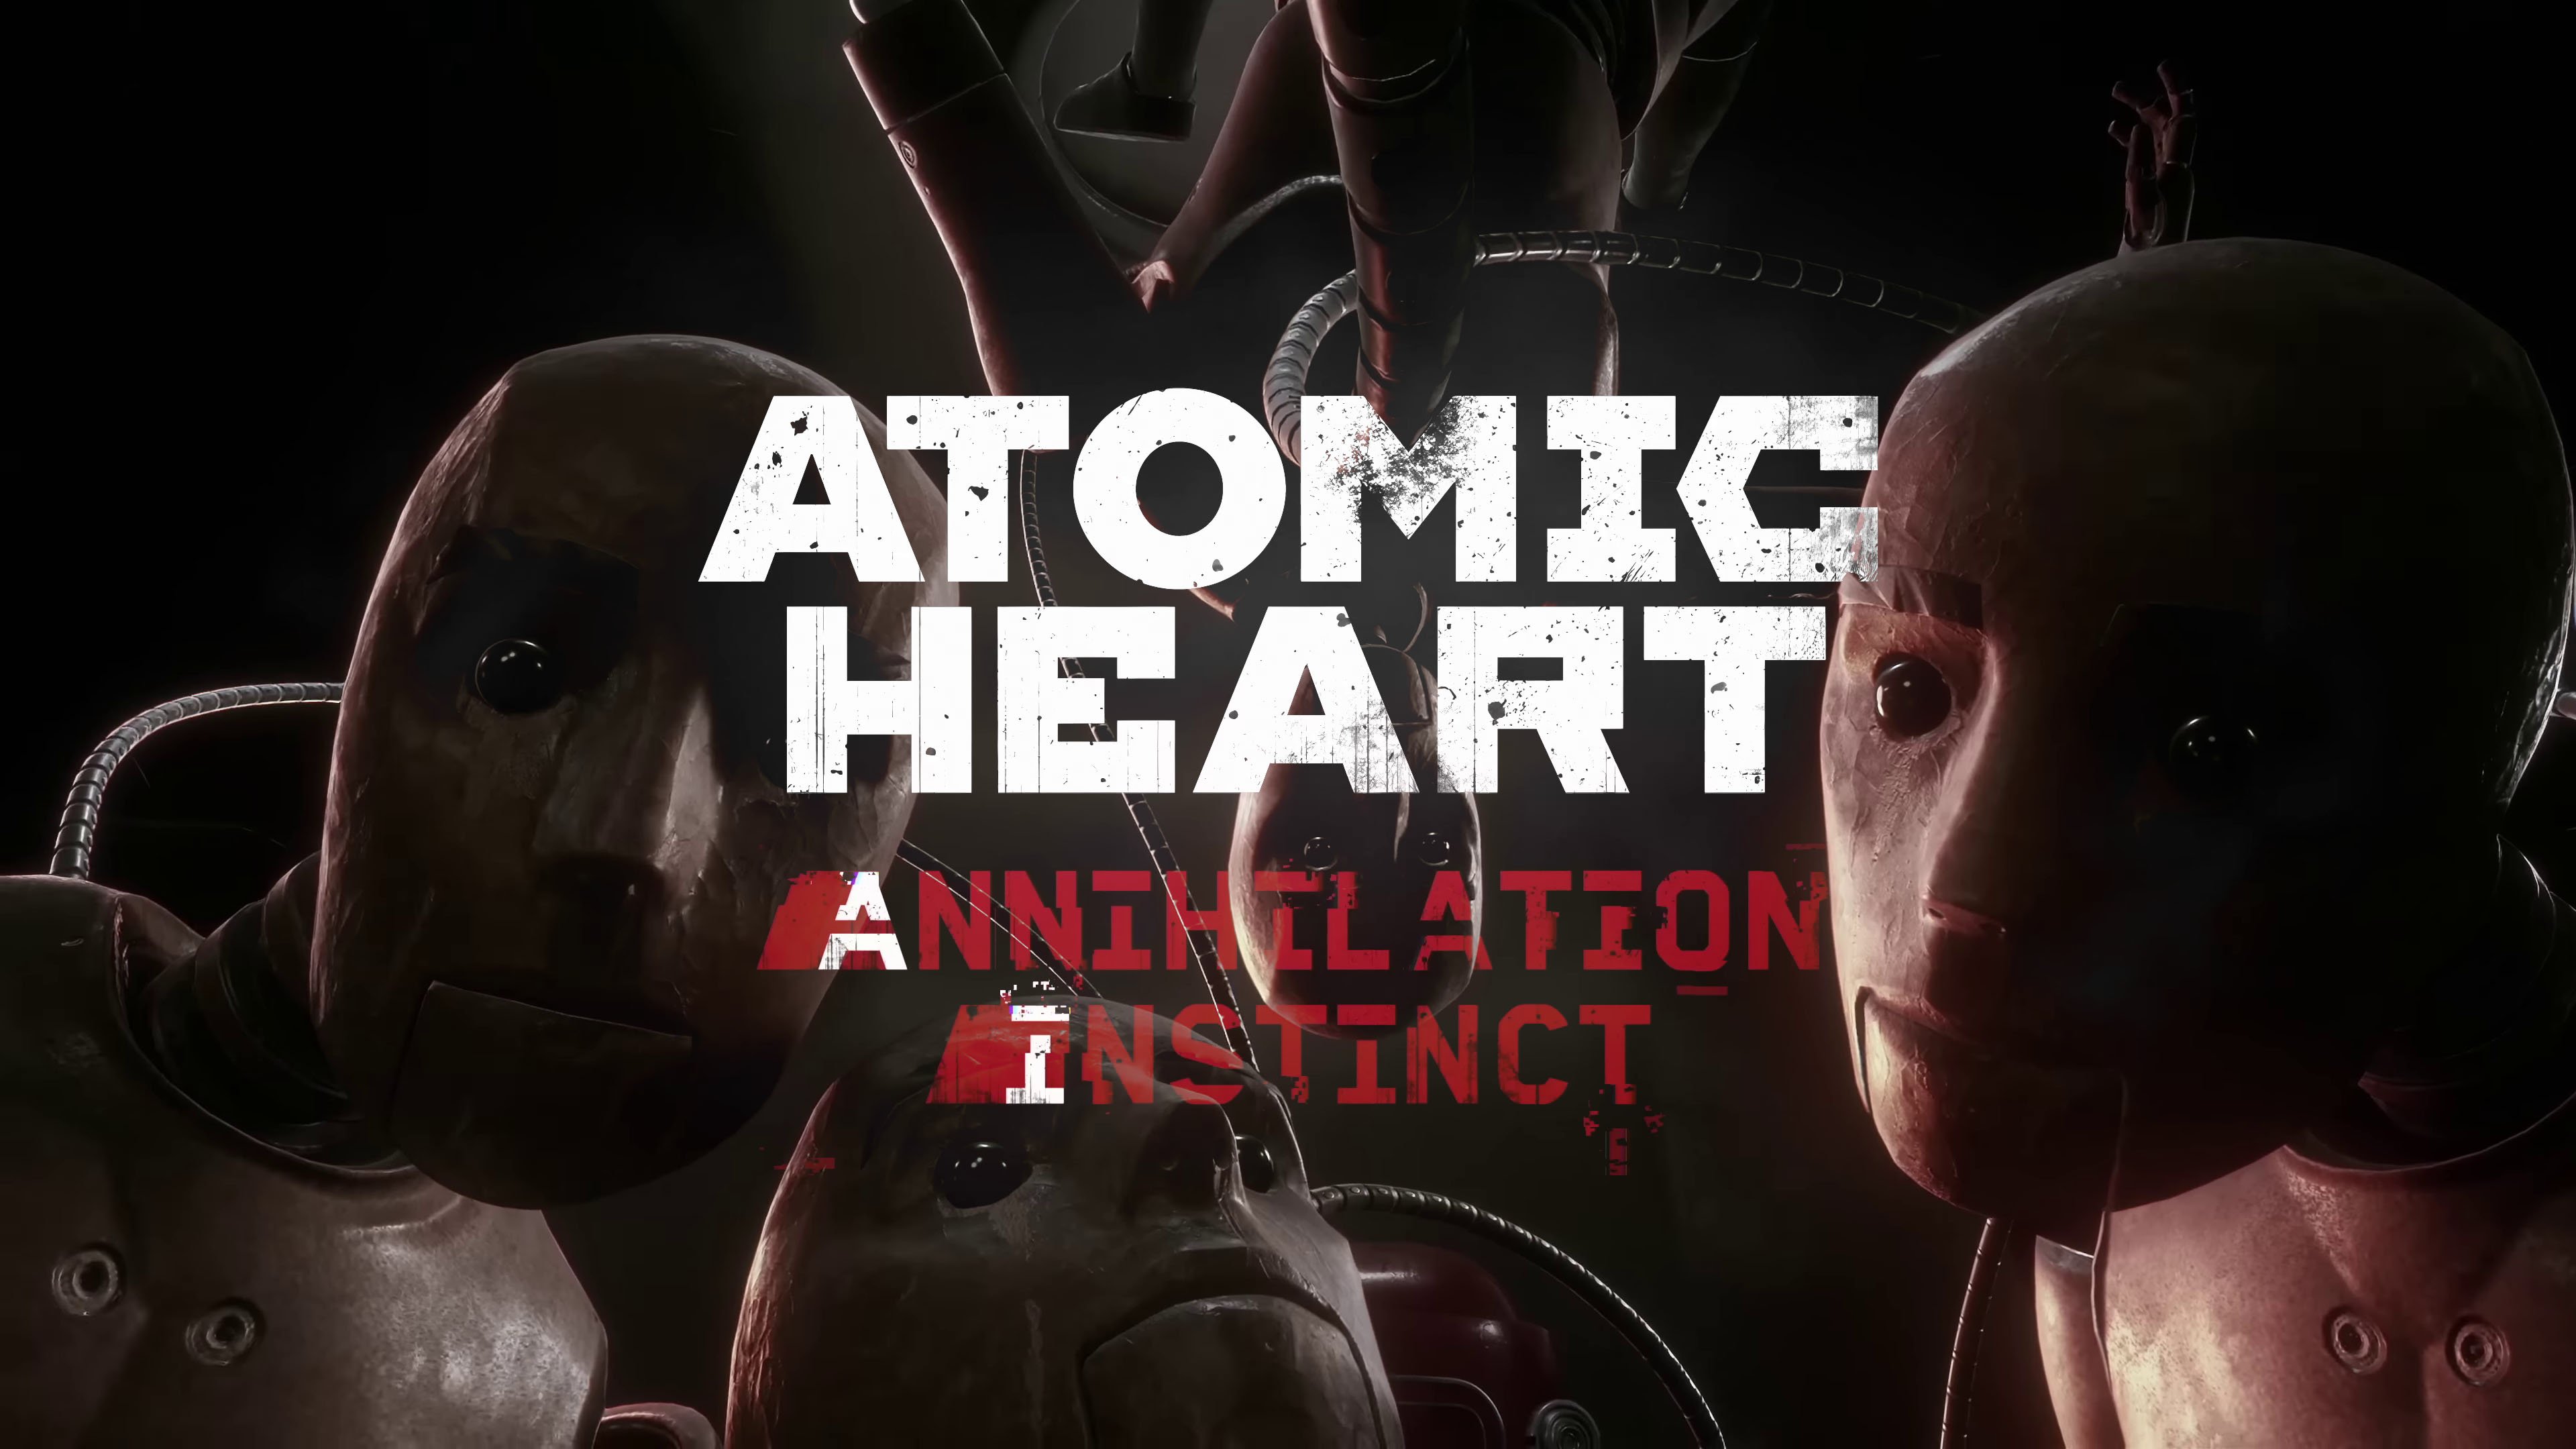 Buy Atomic Heart - Annihilation Instinct Steam